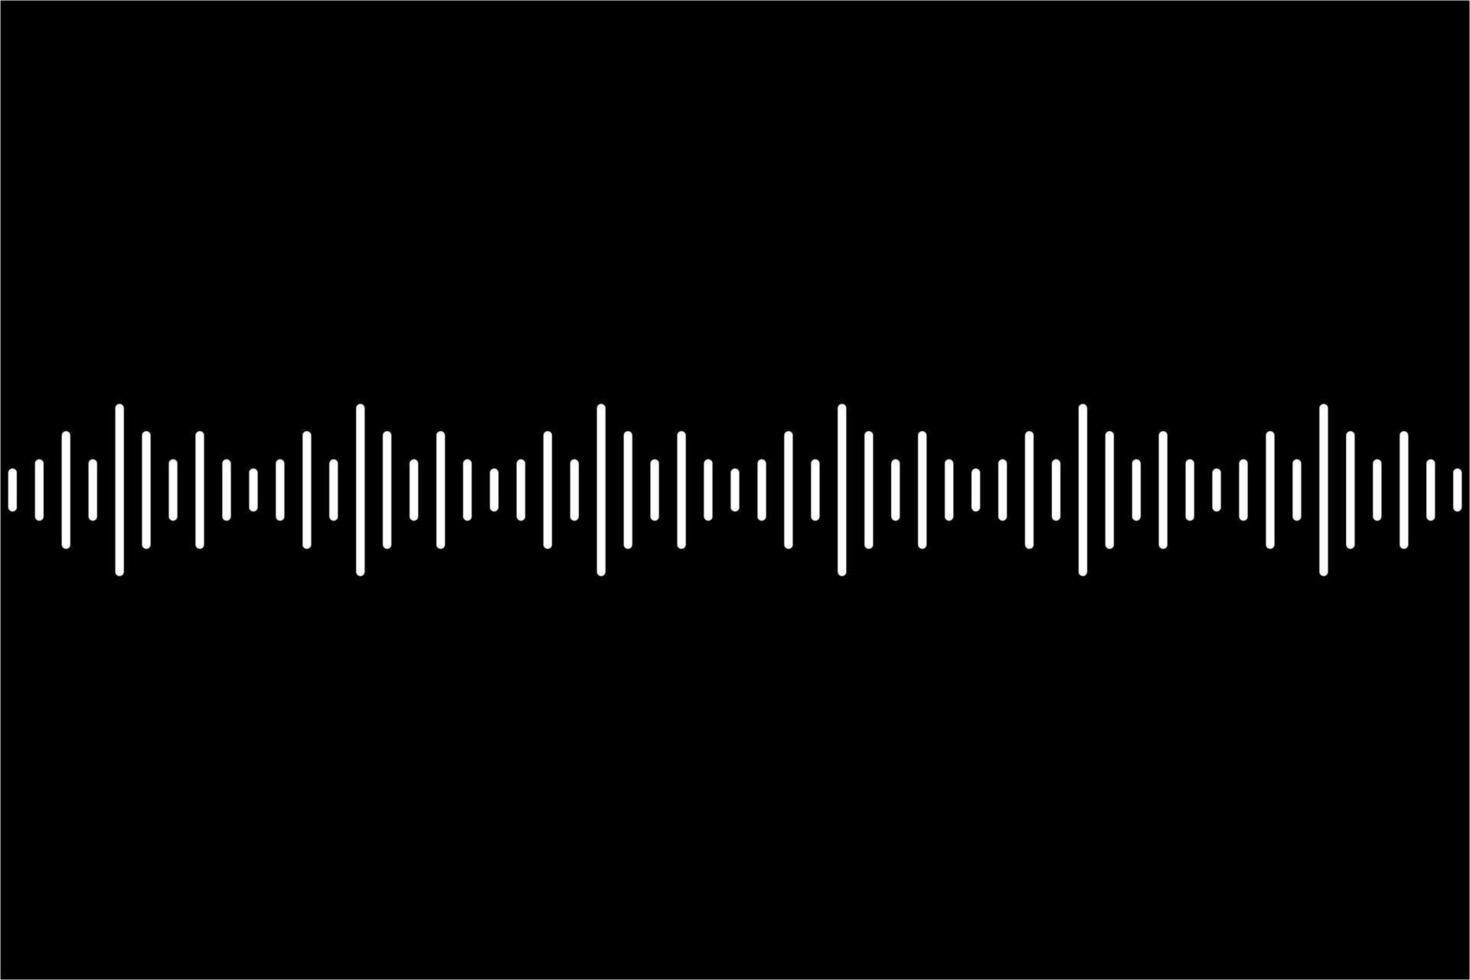 símbolo de ícone de volume de música de onda sonora para logotipo, aplicativos, pictograma, site ou elemento de design gráfico. ilustração vetorial vetor